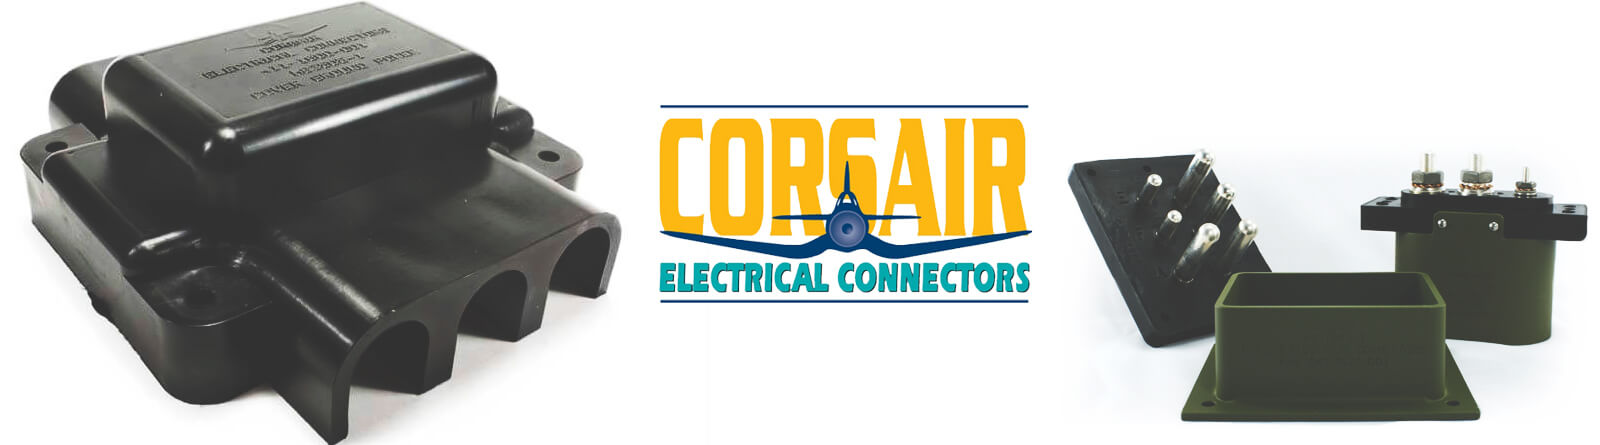 CORSAIR ELECTRICAL CONNECTORS